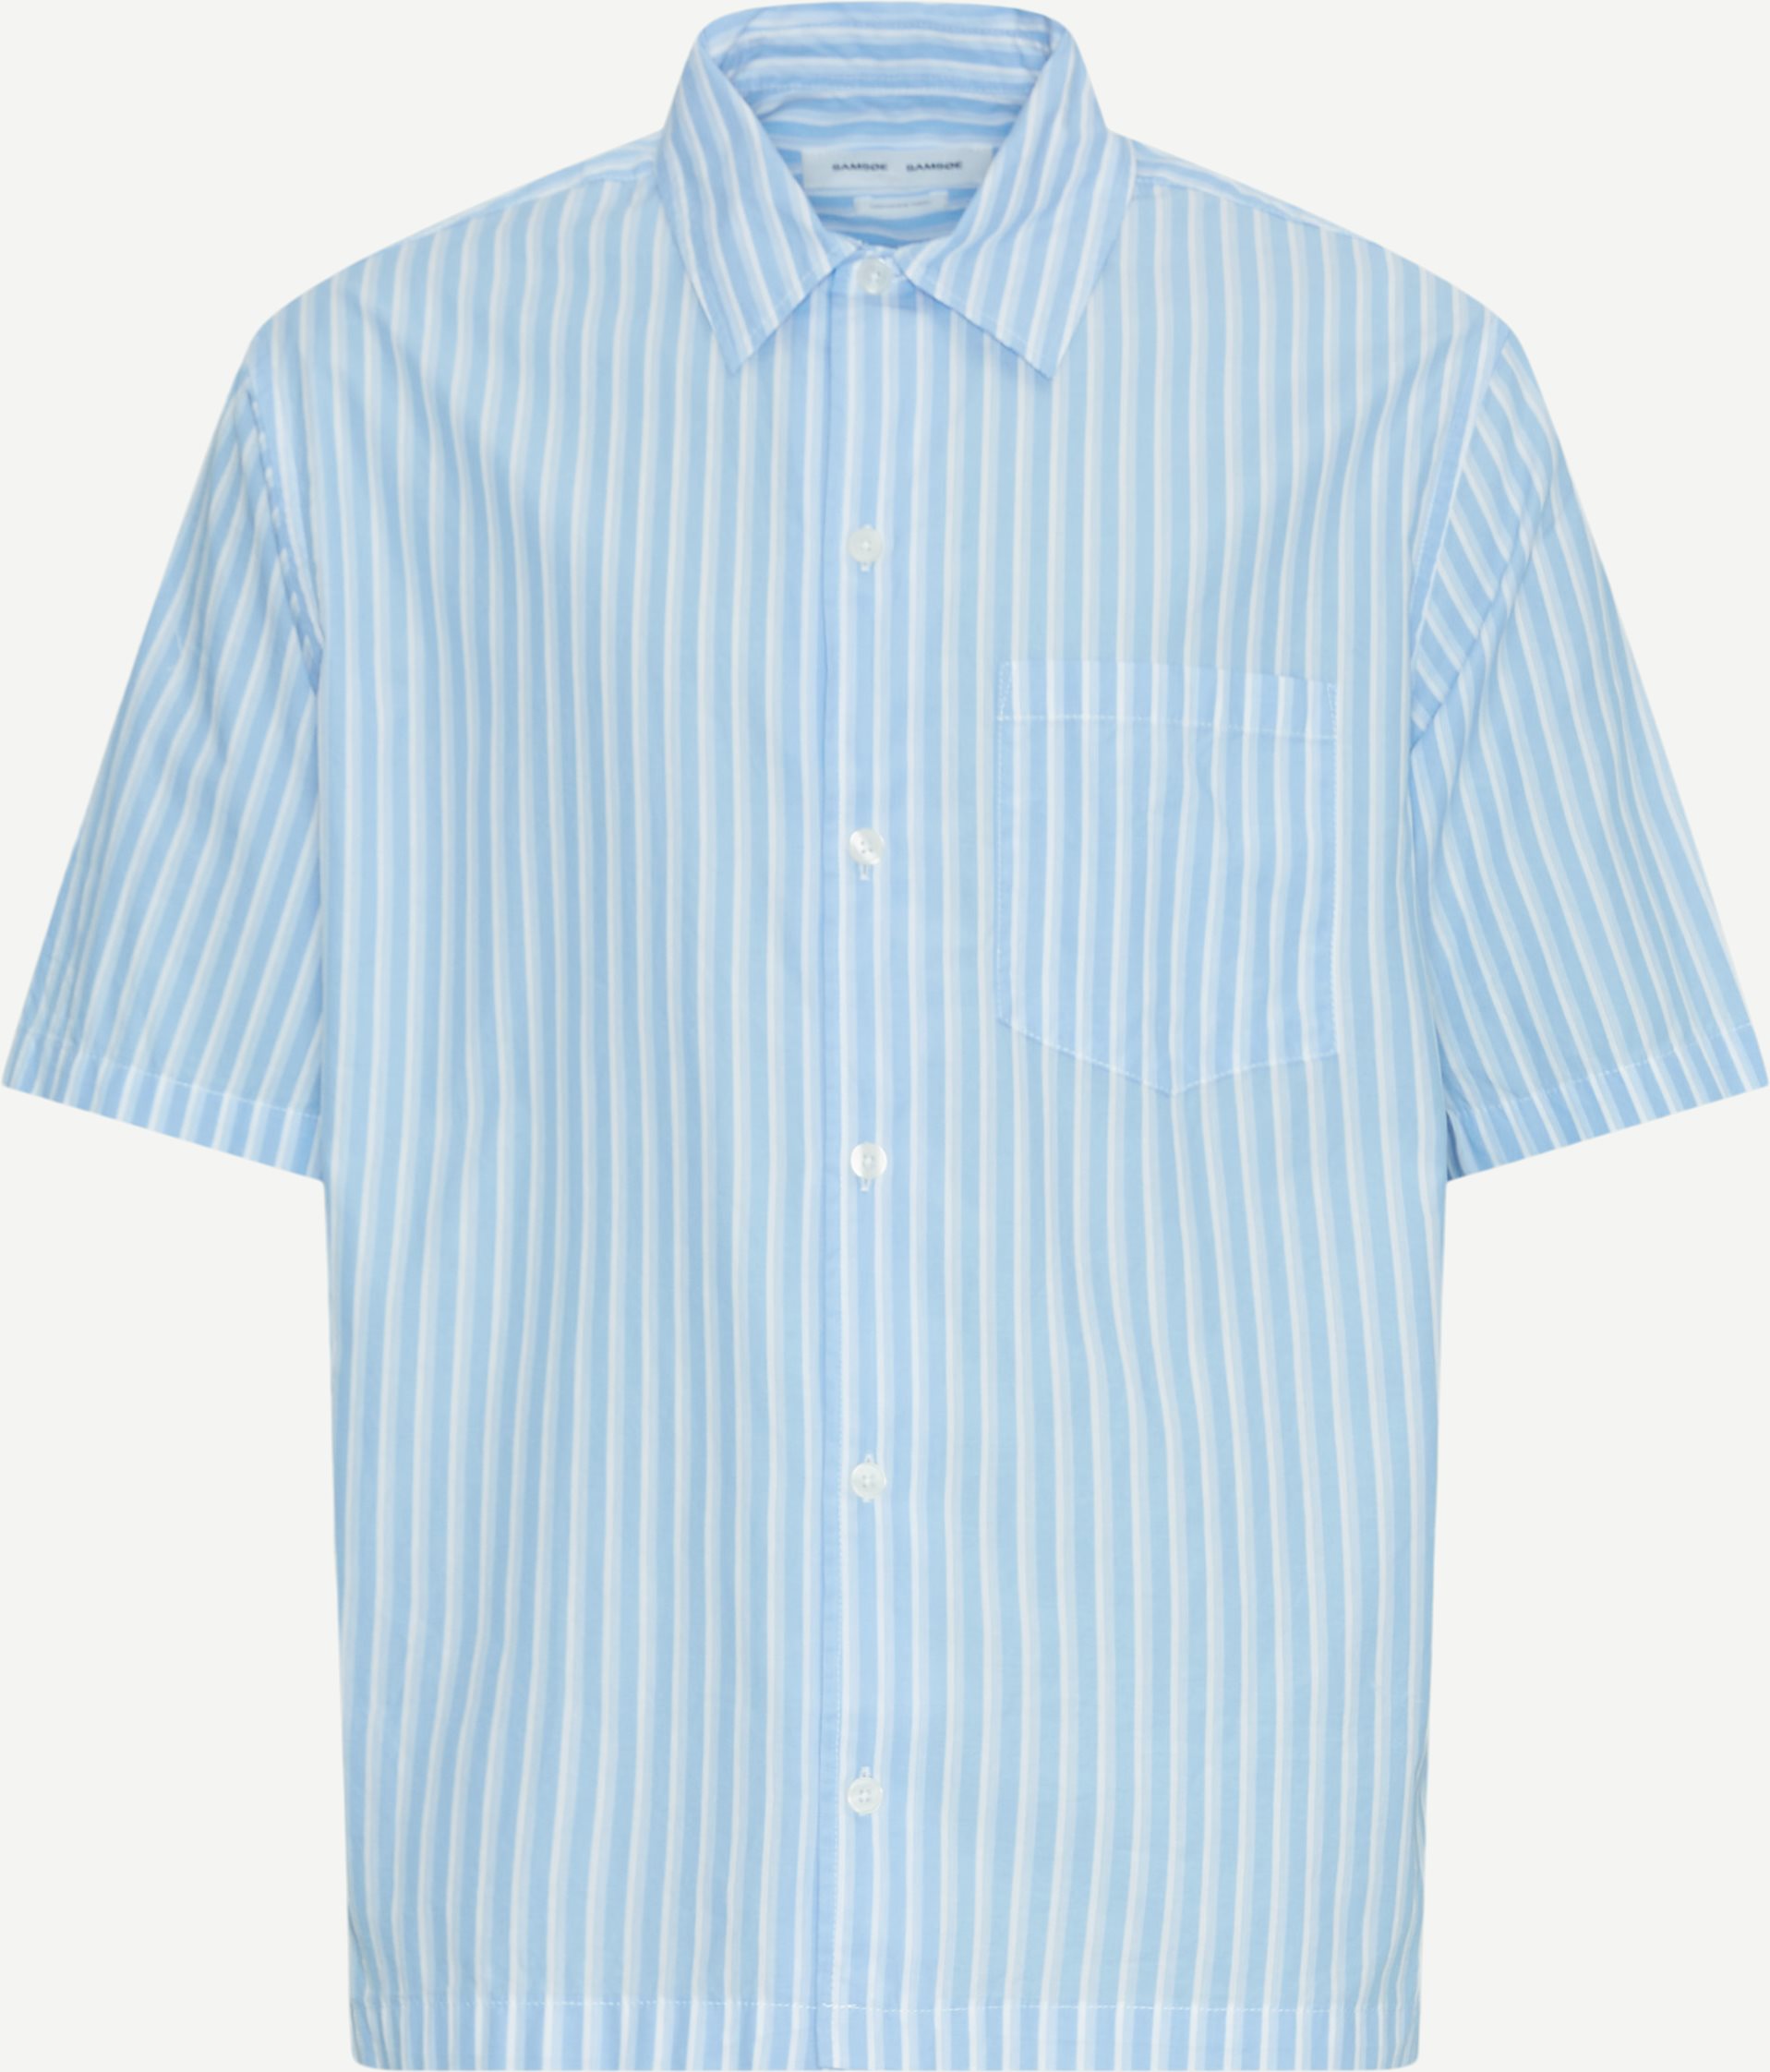 Samsøe Samsøe Kortærmede skjorter SAAYO P SHIRT 15139 Blå